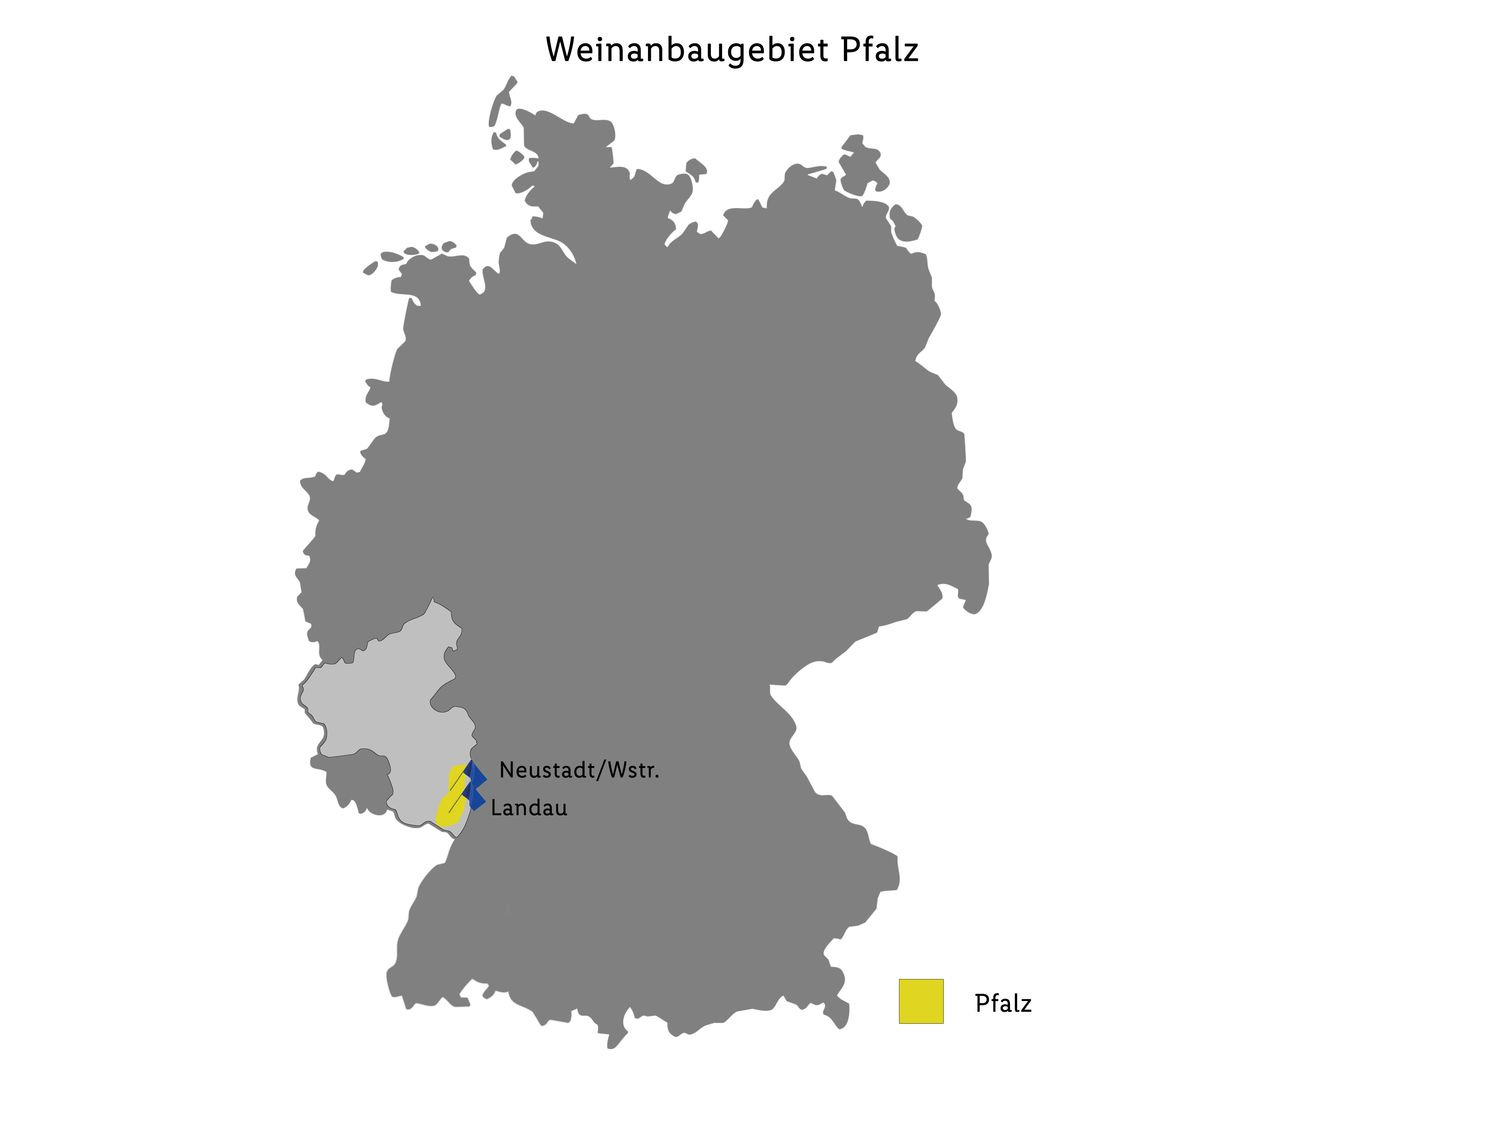 Deutsches Weintor QbA trocken, Weißburgunder Pfalz Wei…